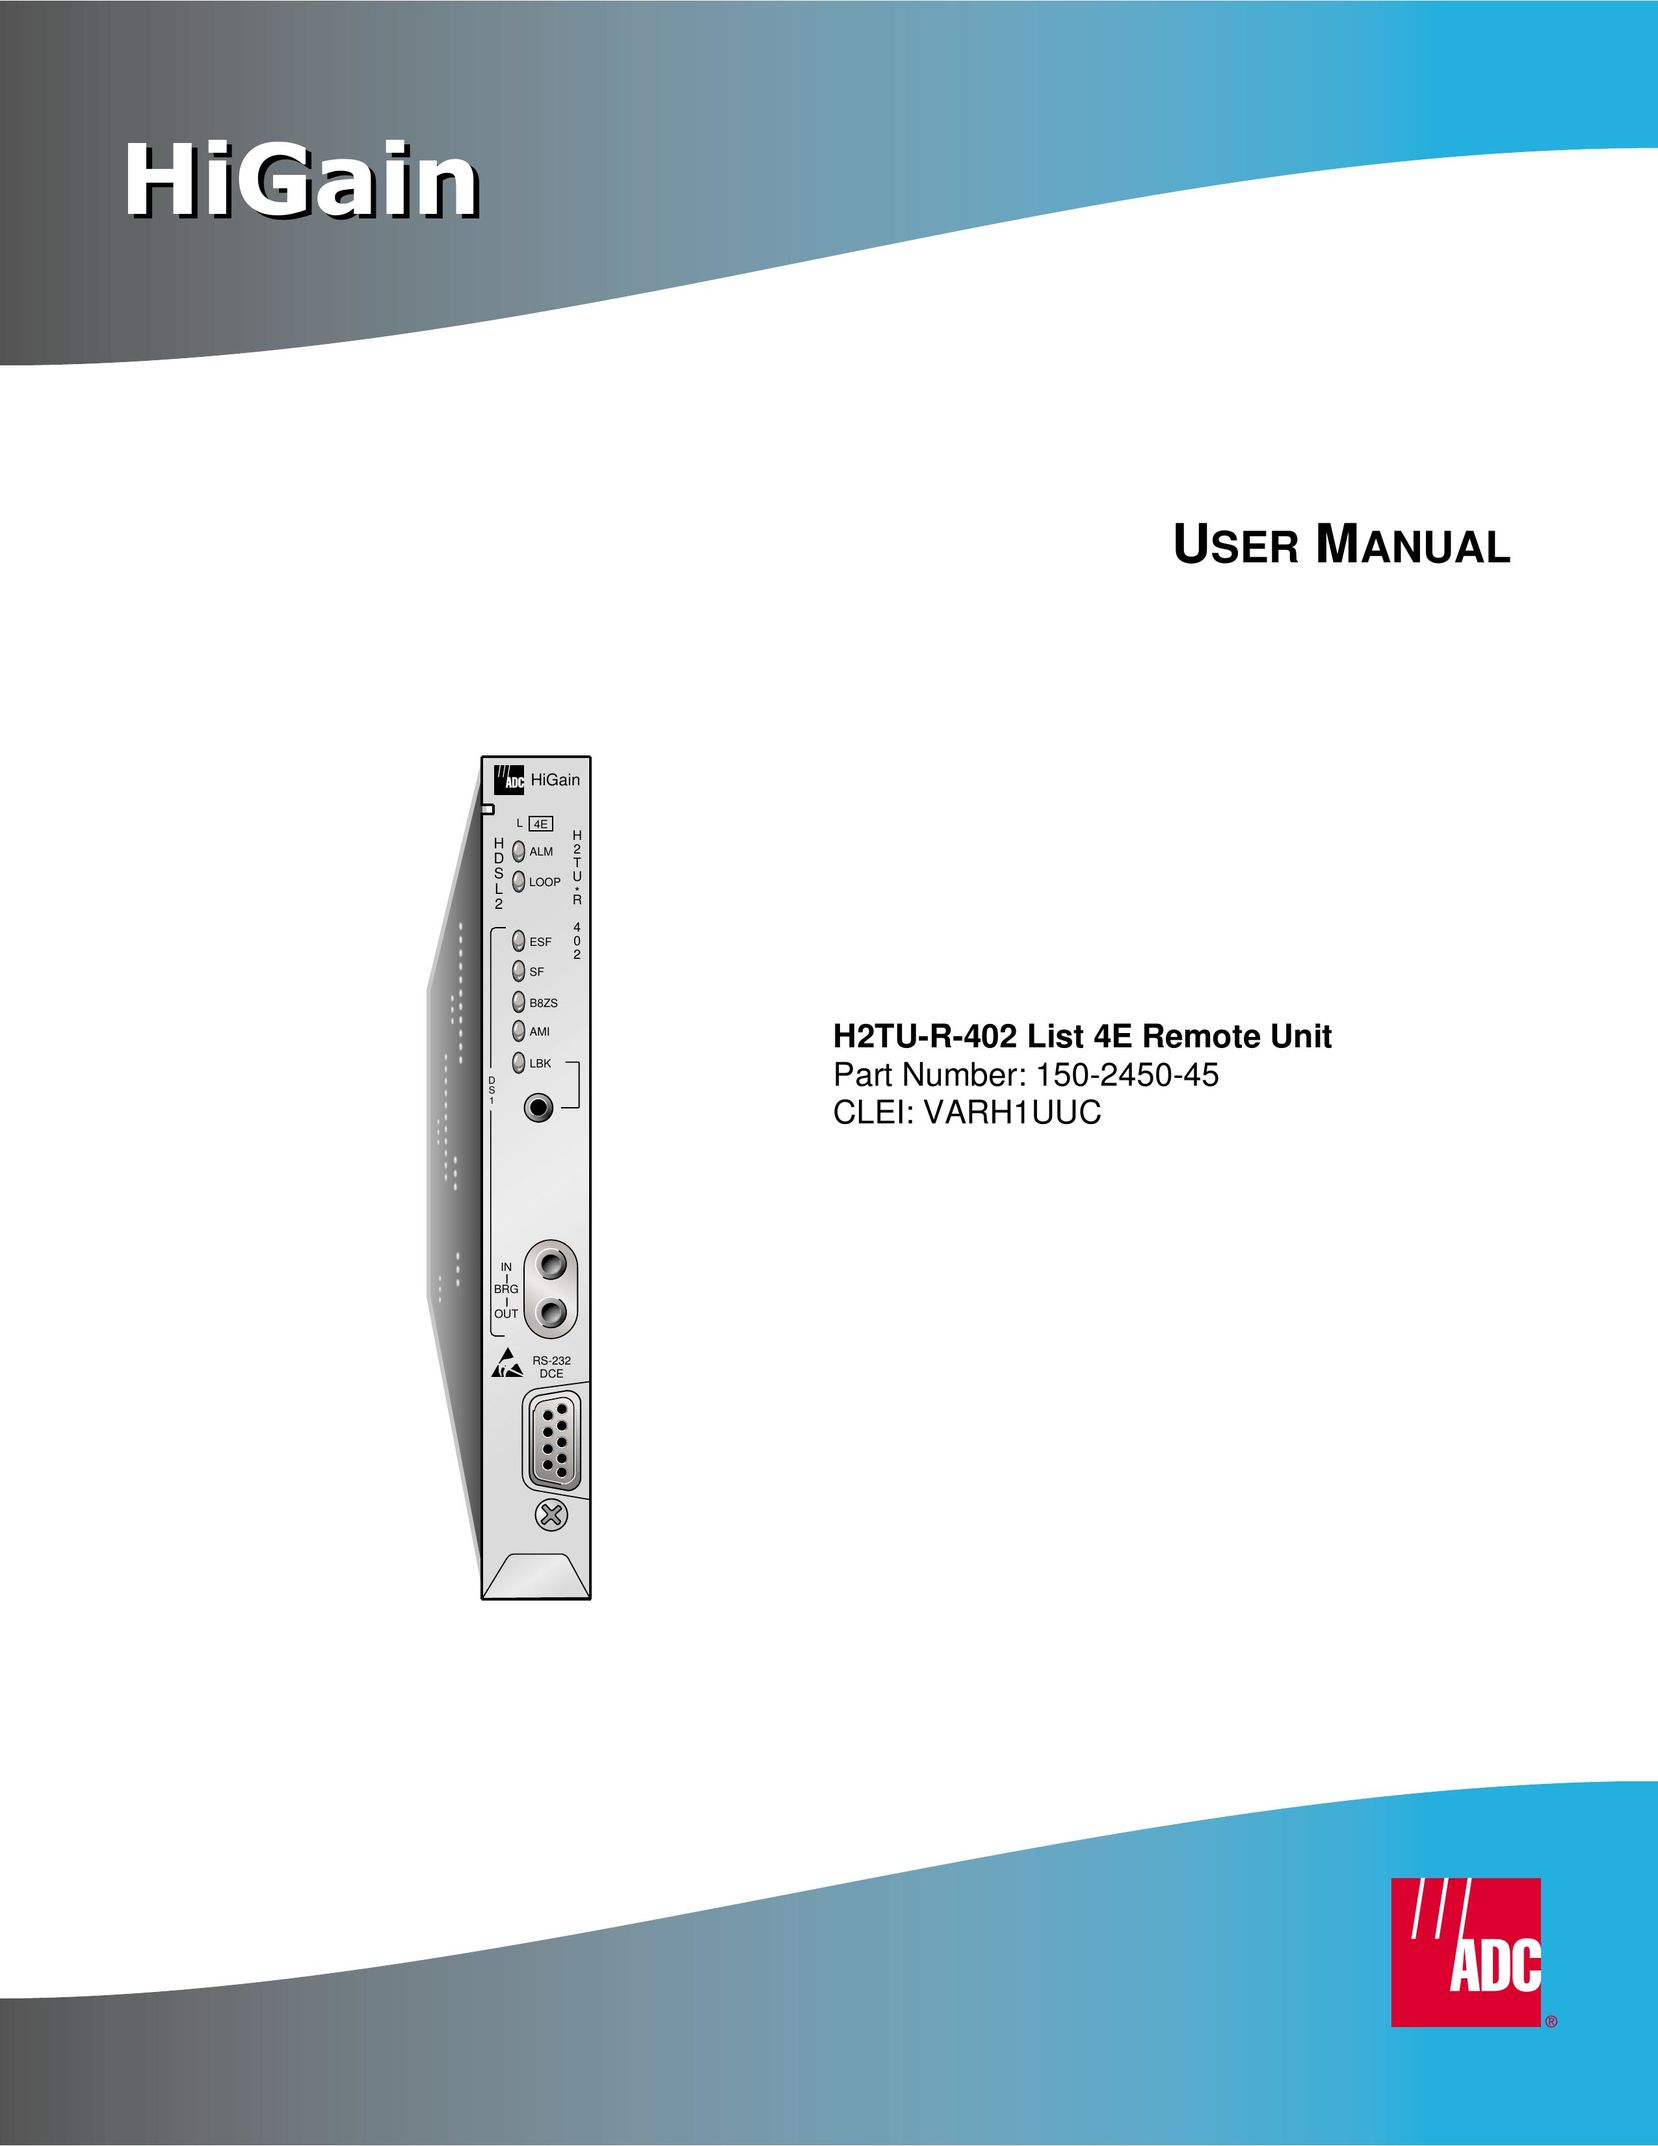 ADC Remote Universal Remote User Manual